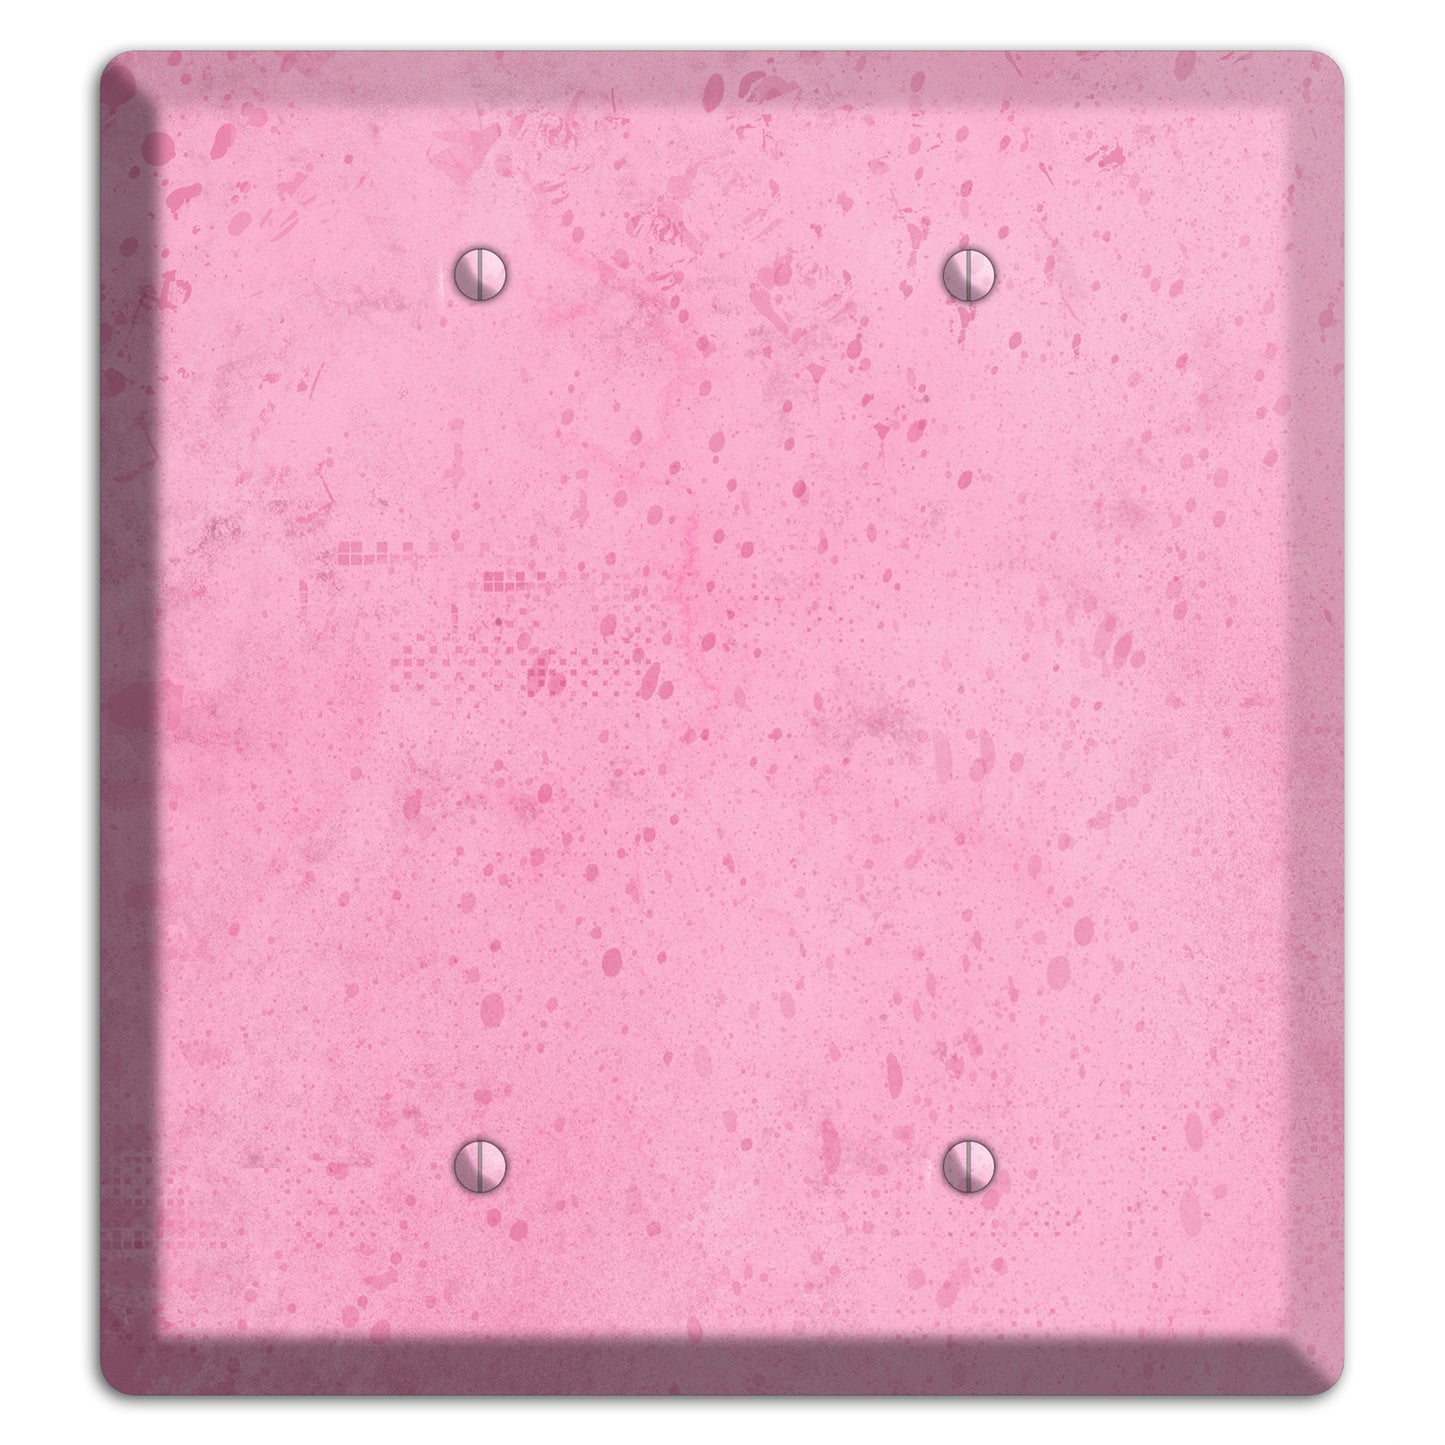 Illusion Pink Texture 2 Blank Wallplate